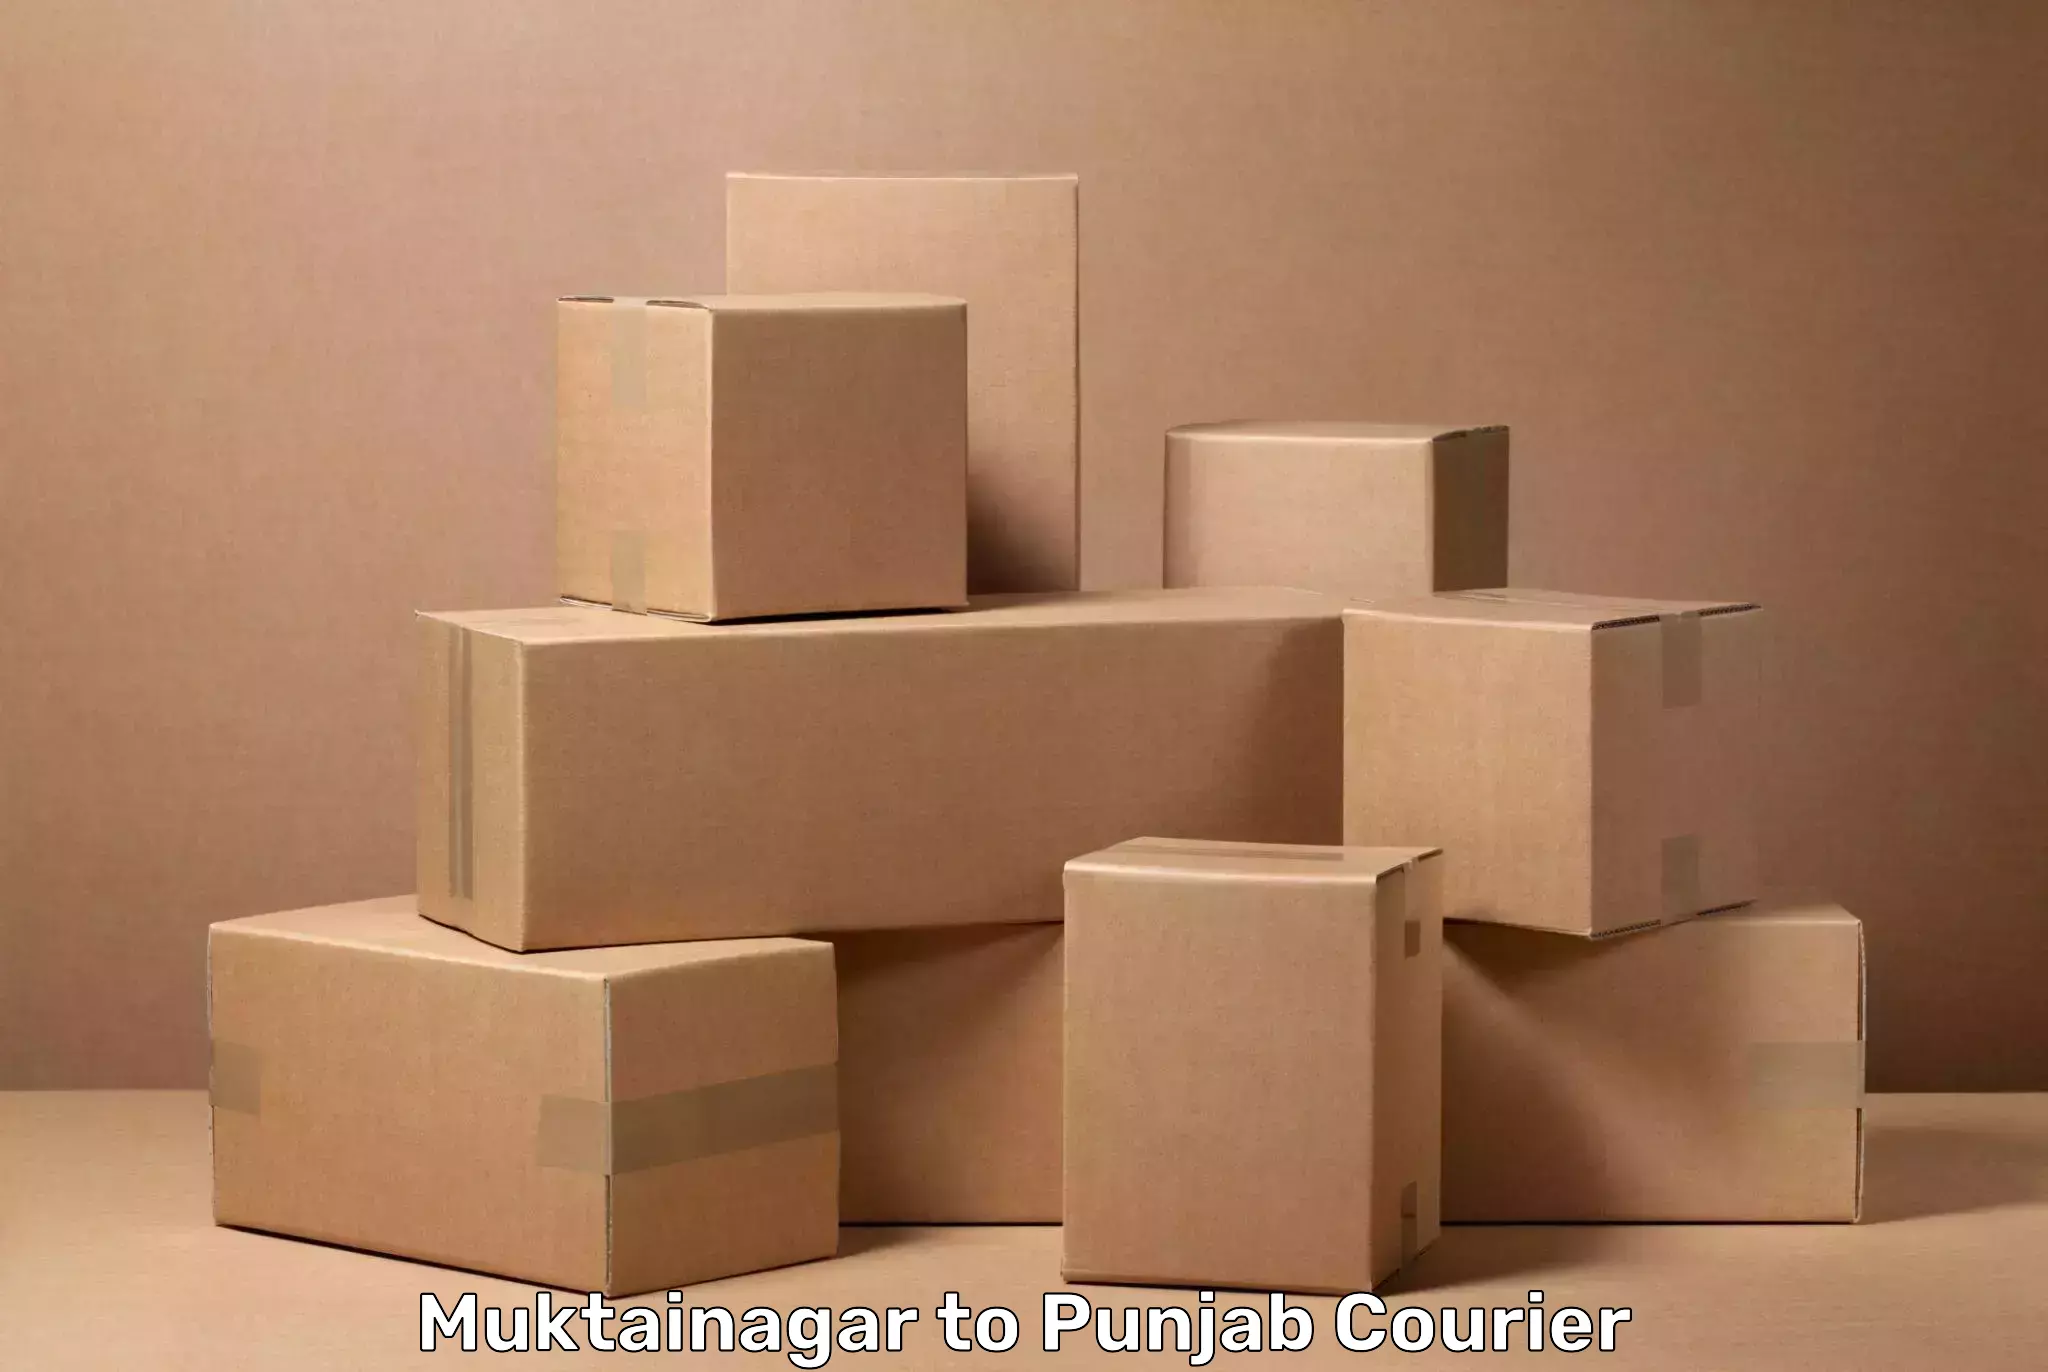 Flexible luggage courier service Muktainagar to Central University of Punjab Bathinda